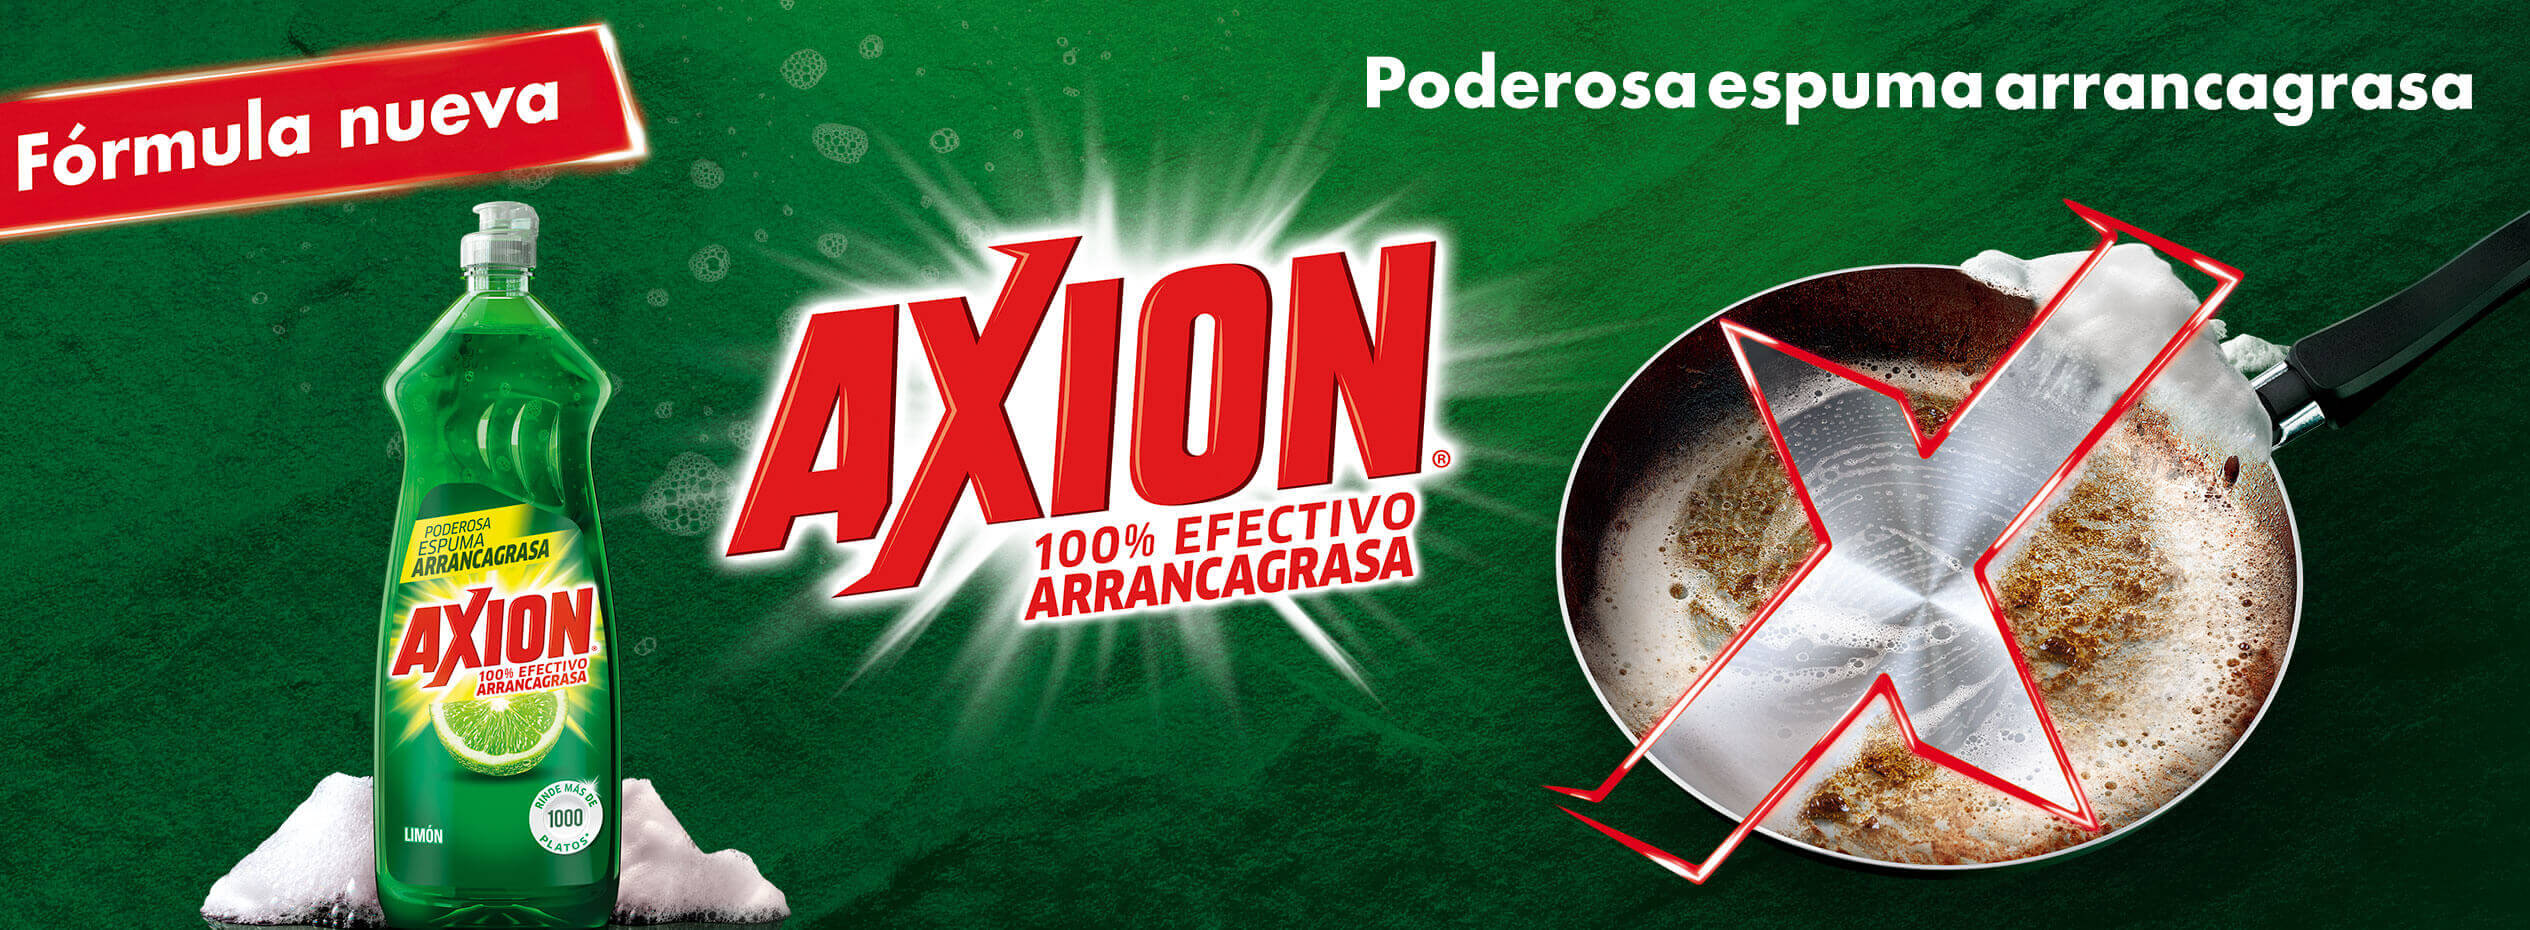 Axion® Limón. 100% efectivo arrancagrasa. Su nueva fórmula con poderosa espuma arrancagrasa rinde más de 1,000 platos